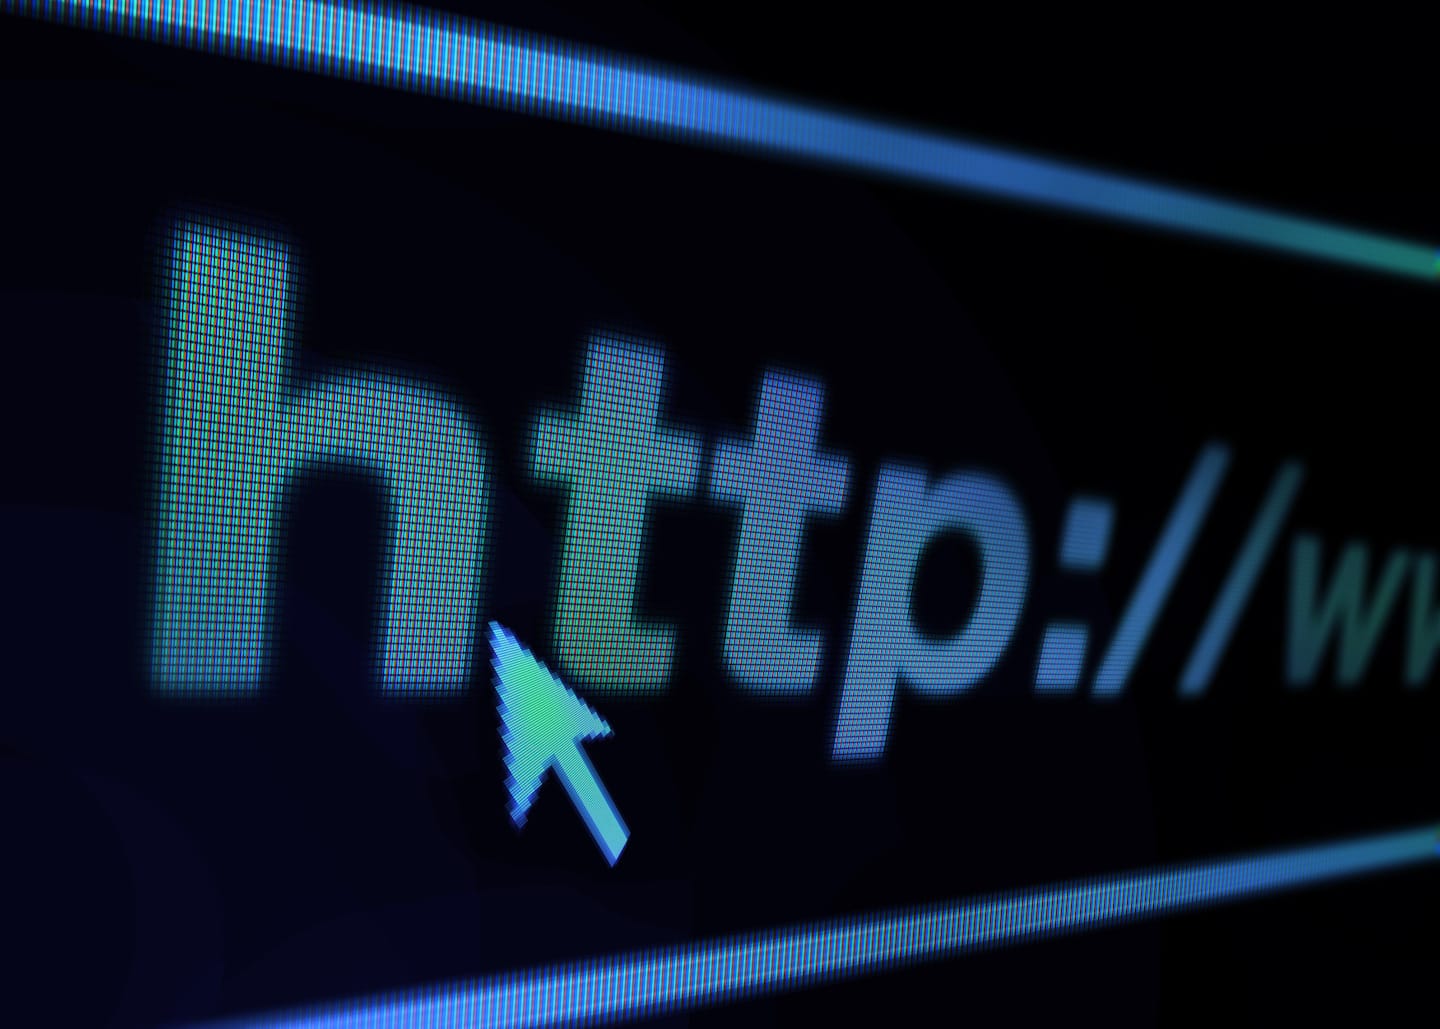 Tipos de dominio de internet - Caja buscador del navegador